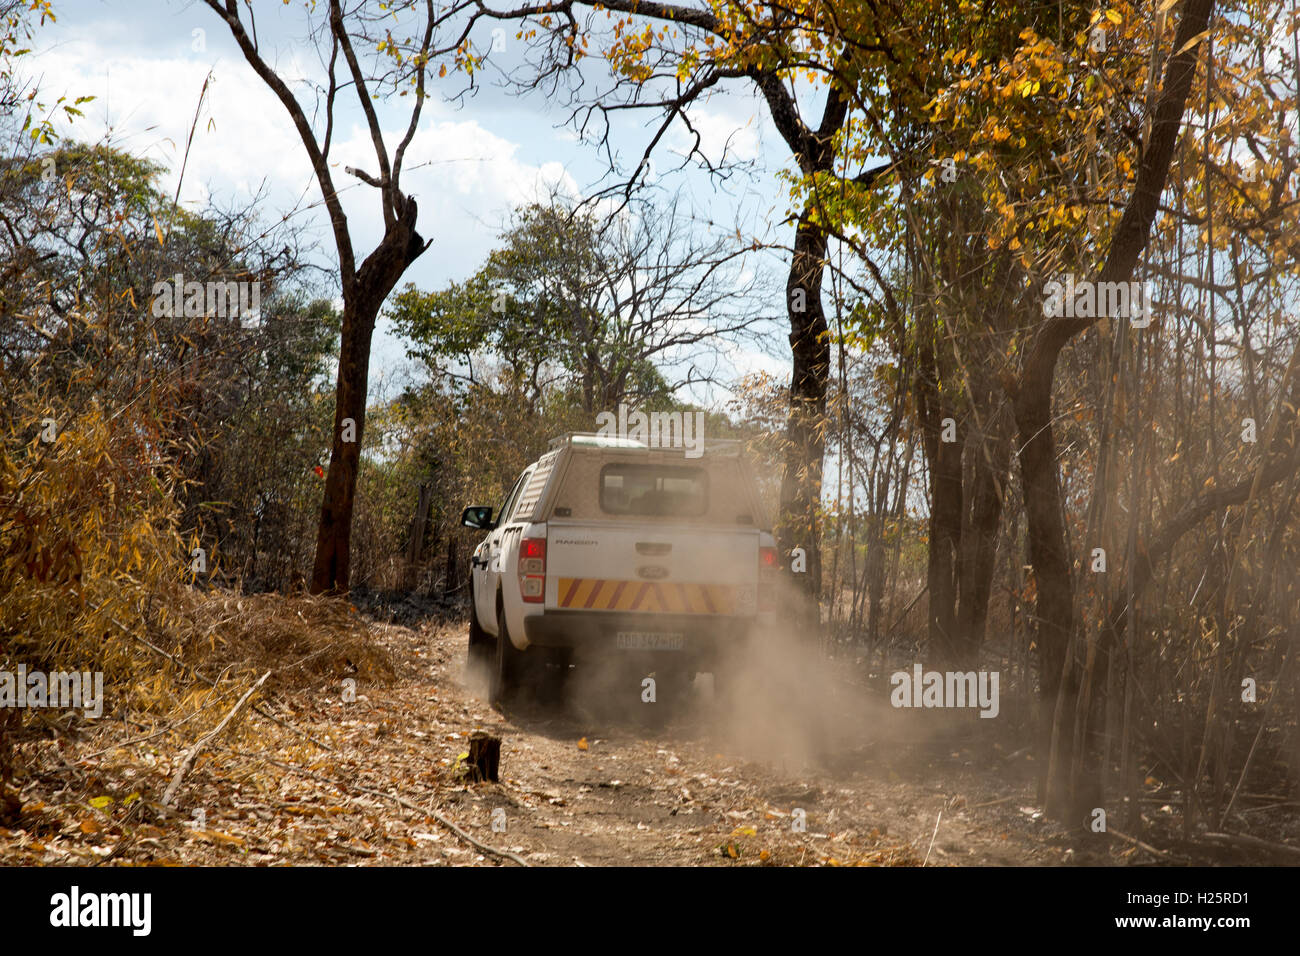 Ribaue, Nampula Provincia, Mozambico, Agosto 2015: progetto Sightsavers veicolo portante benificiaries sul modo di Lalaua distretto. Foto di Mike Goldwater Foto Stock